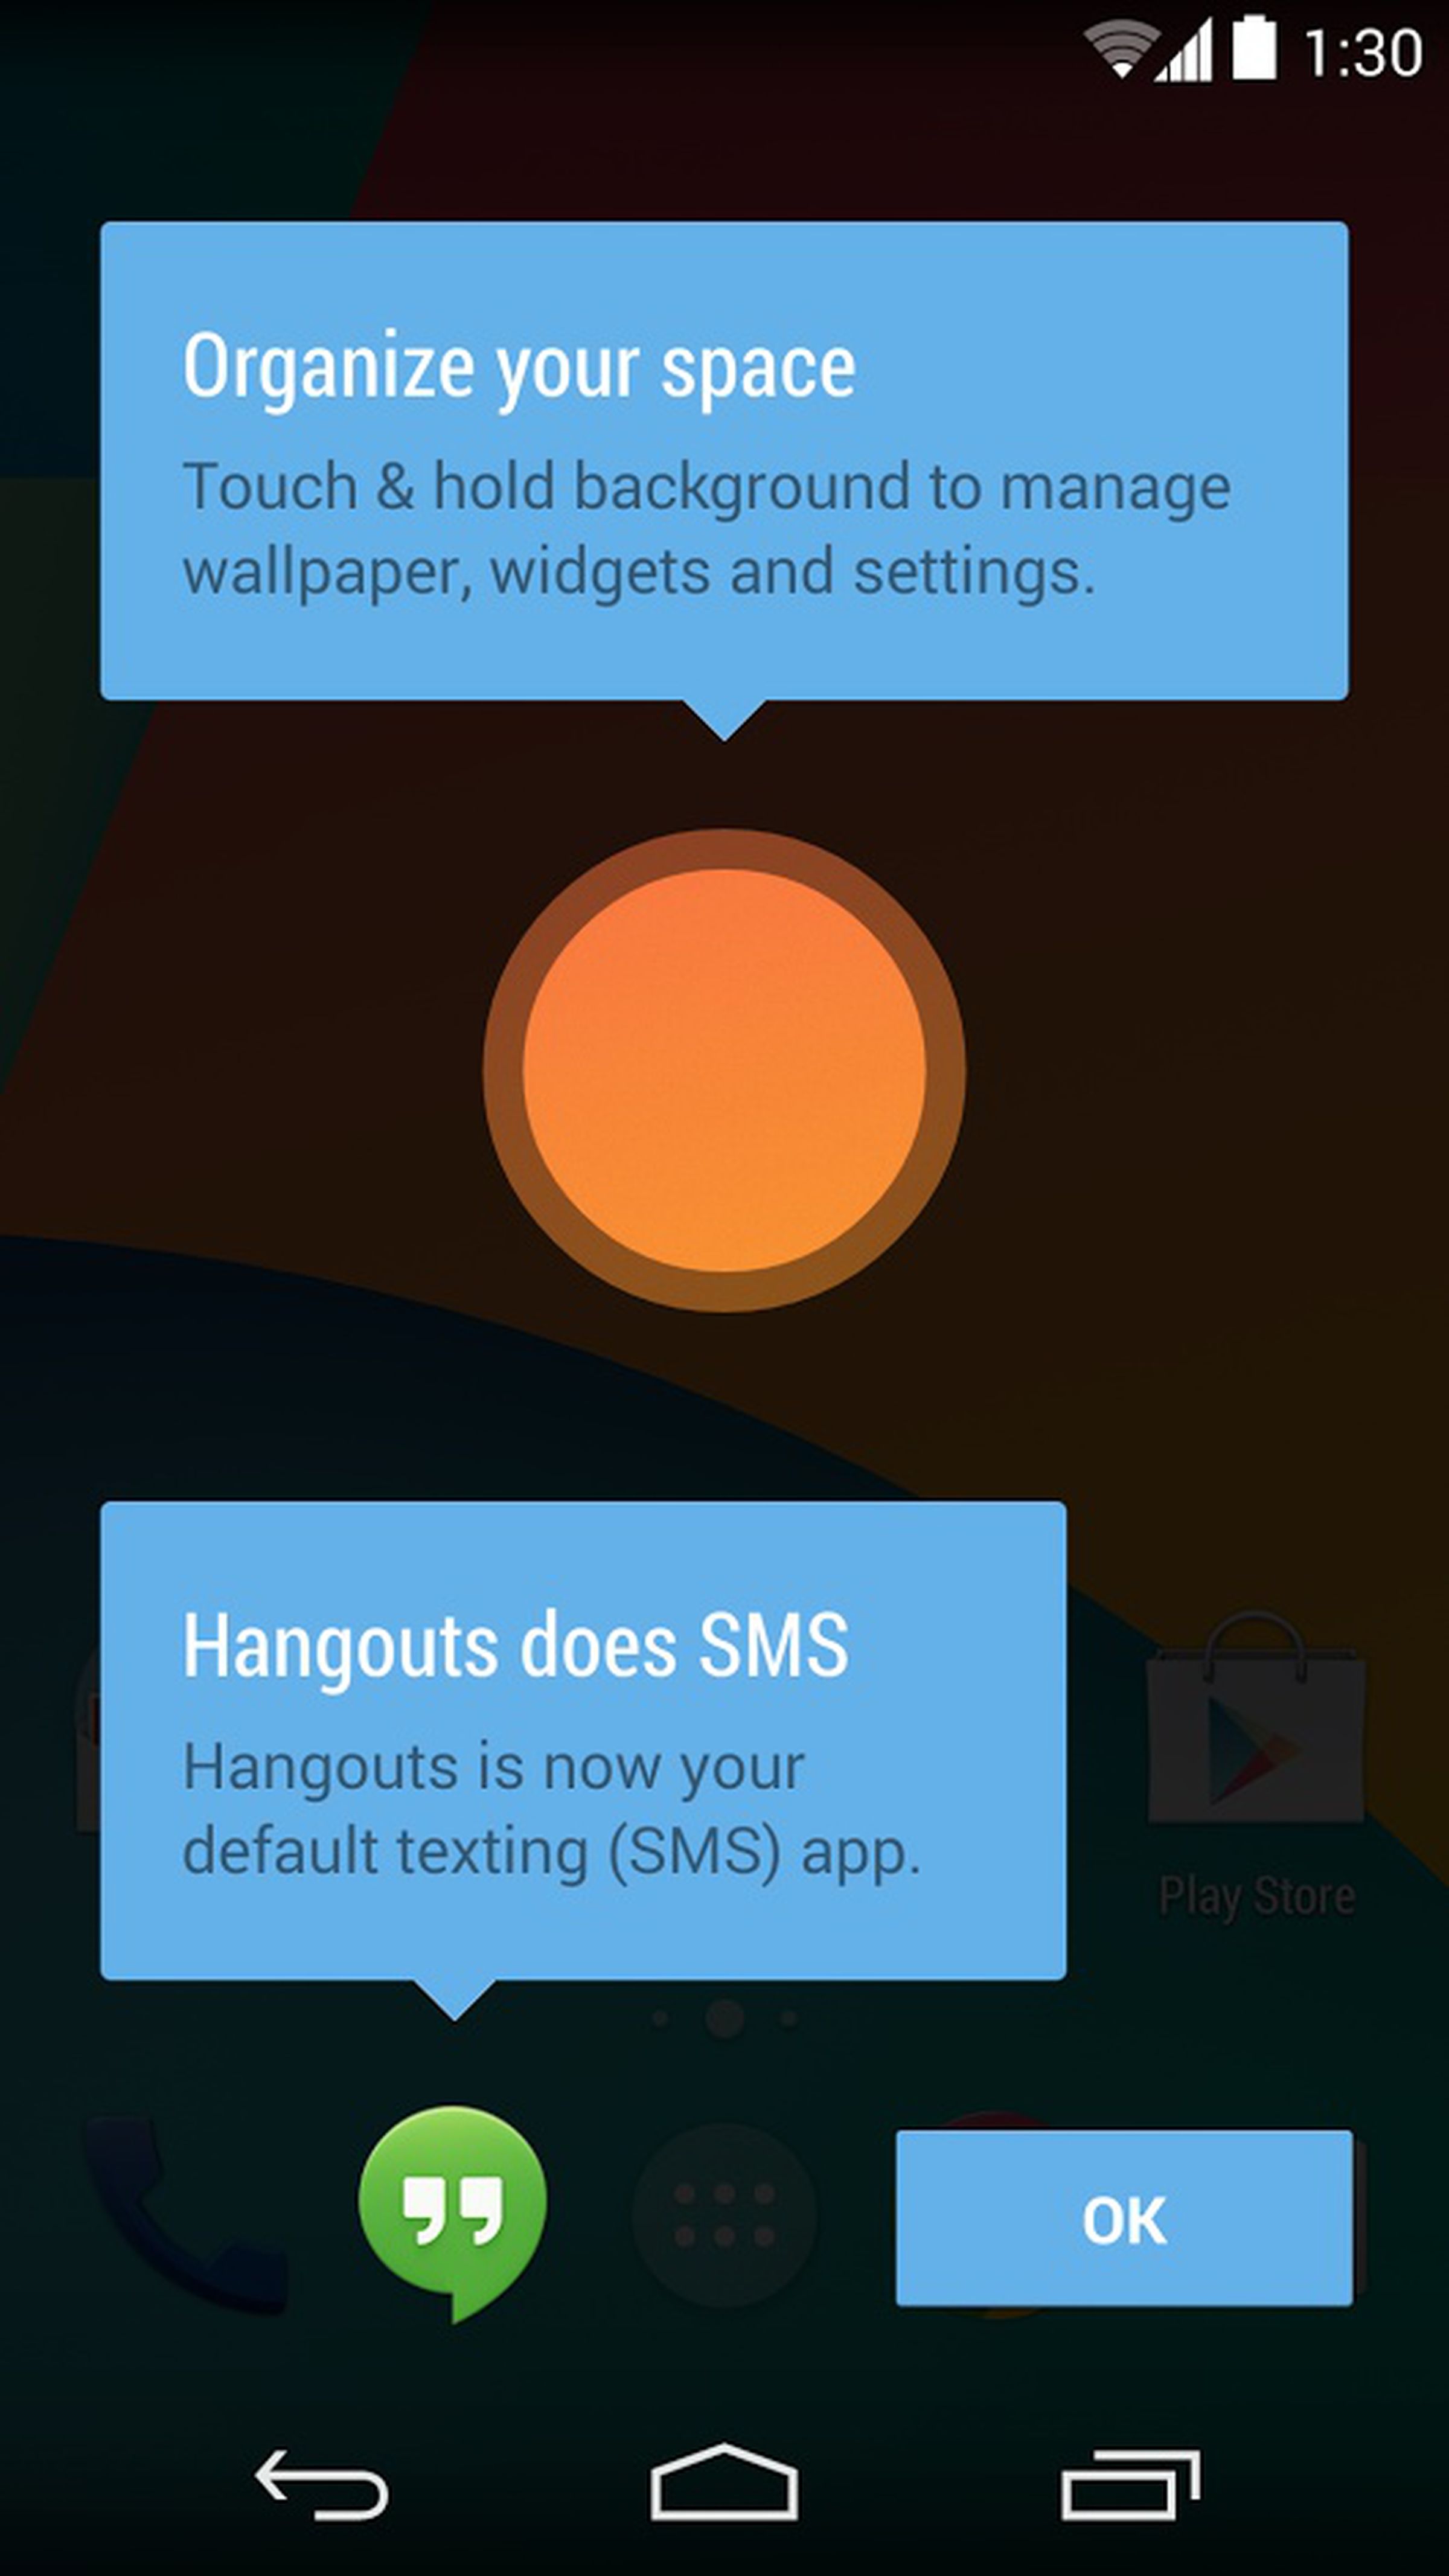 Android 4.4 KitKat screenshots